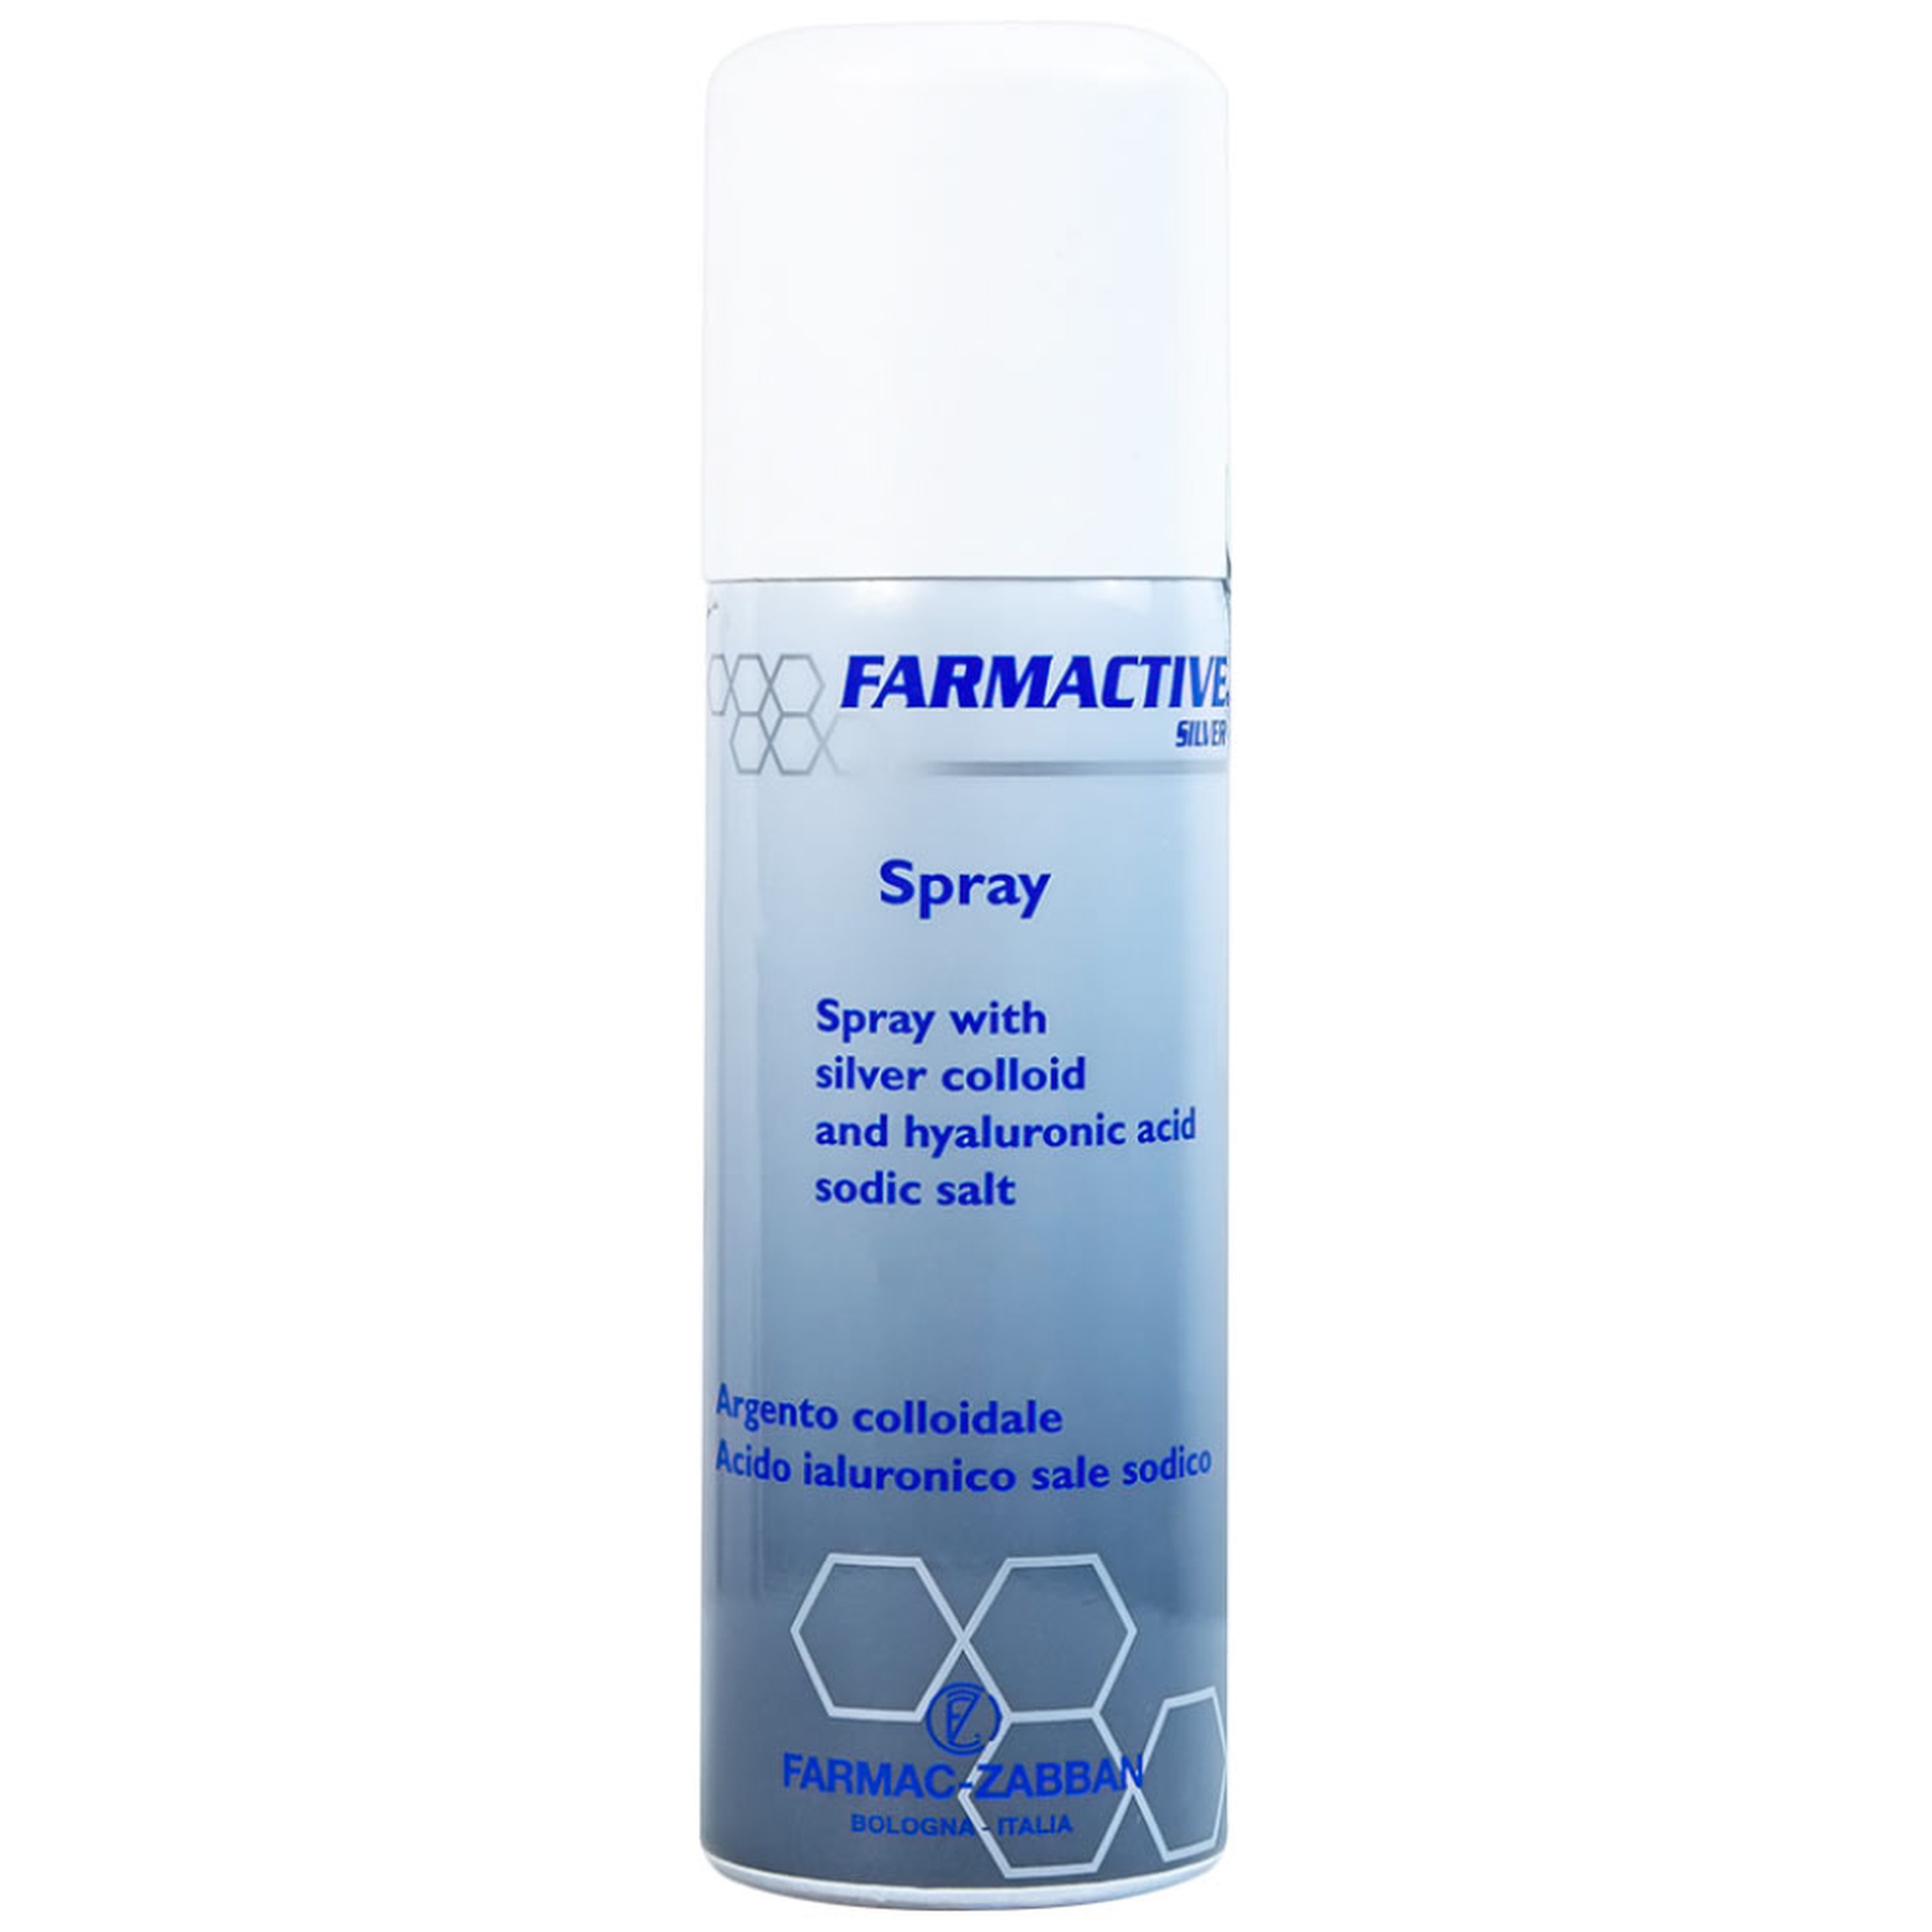 Chai xịt bạc Farmactive Silver Spray hỗ trợ điều trị bỏng, trầy xước, vết loét dưới da (125ml)